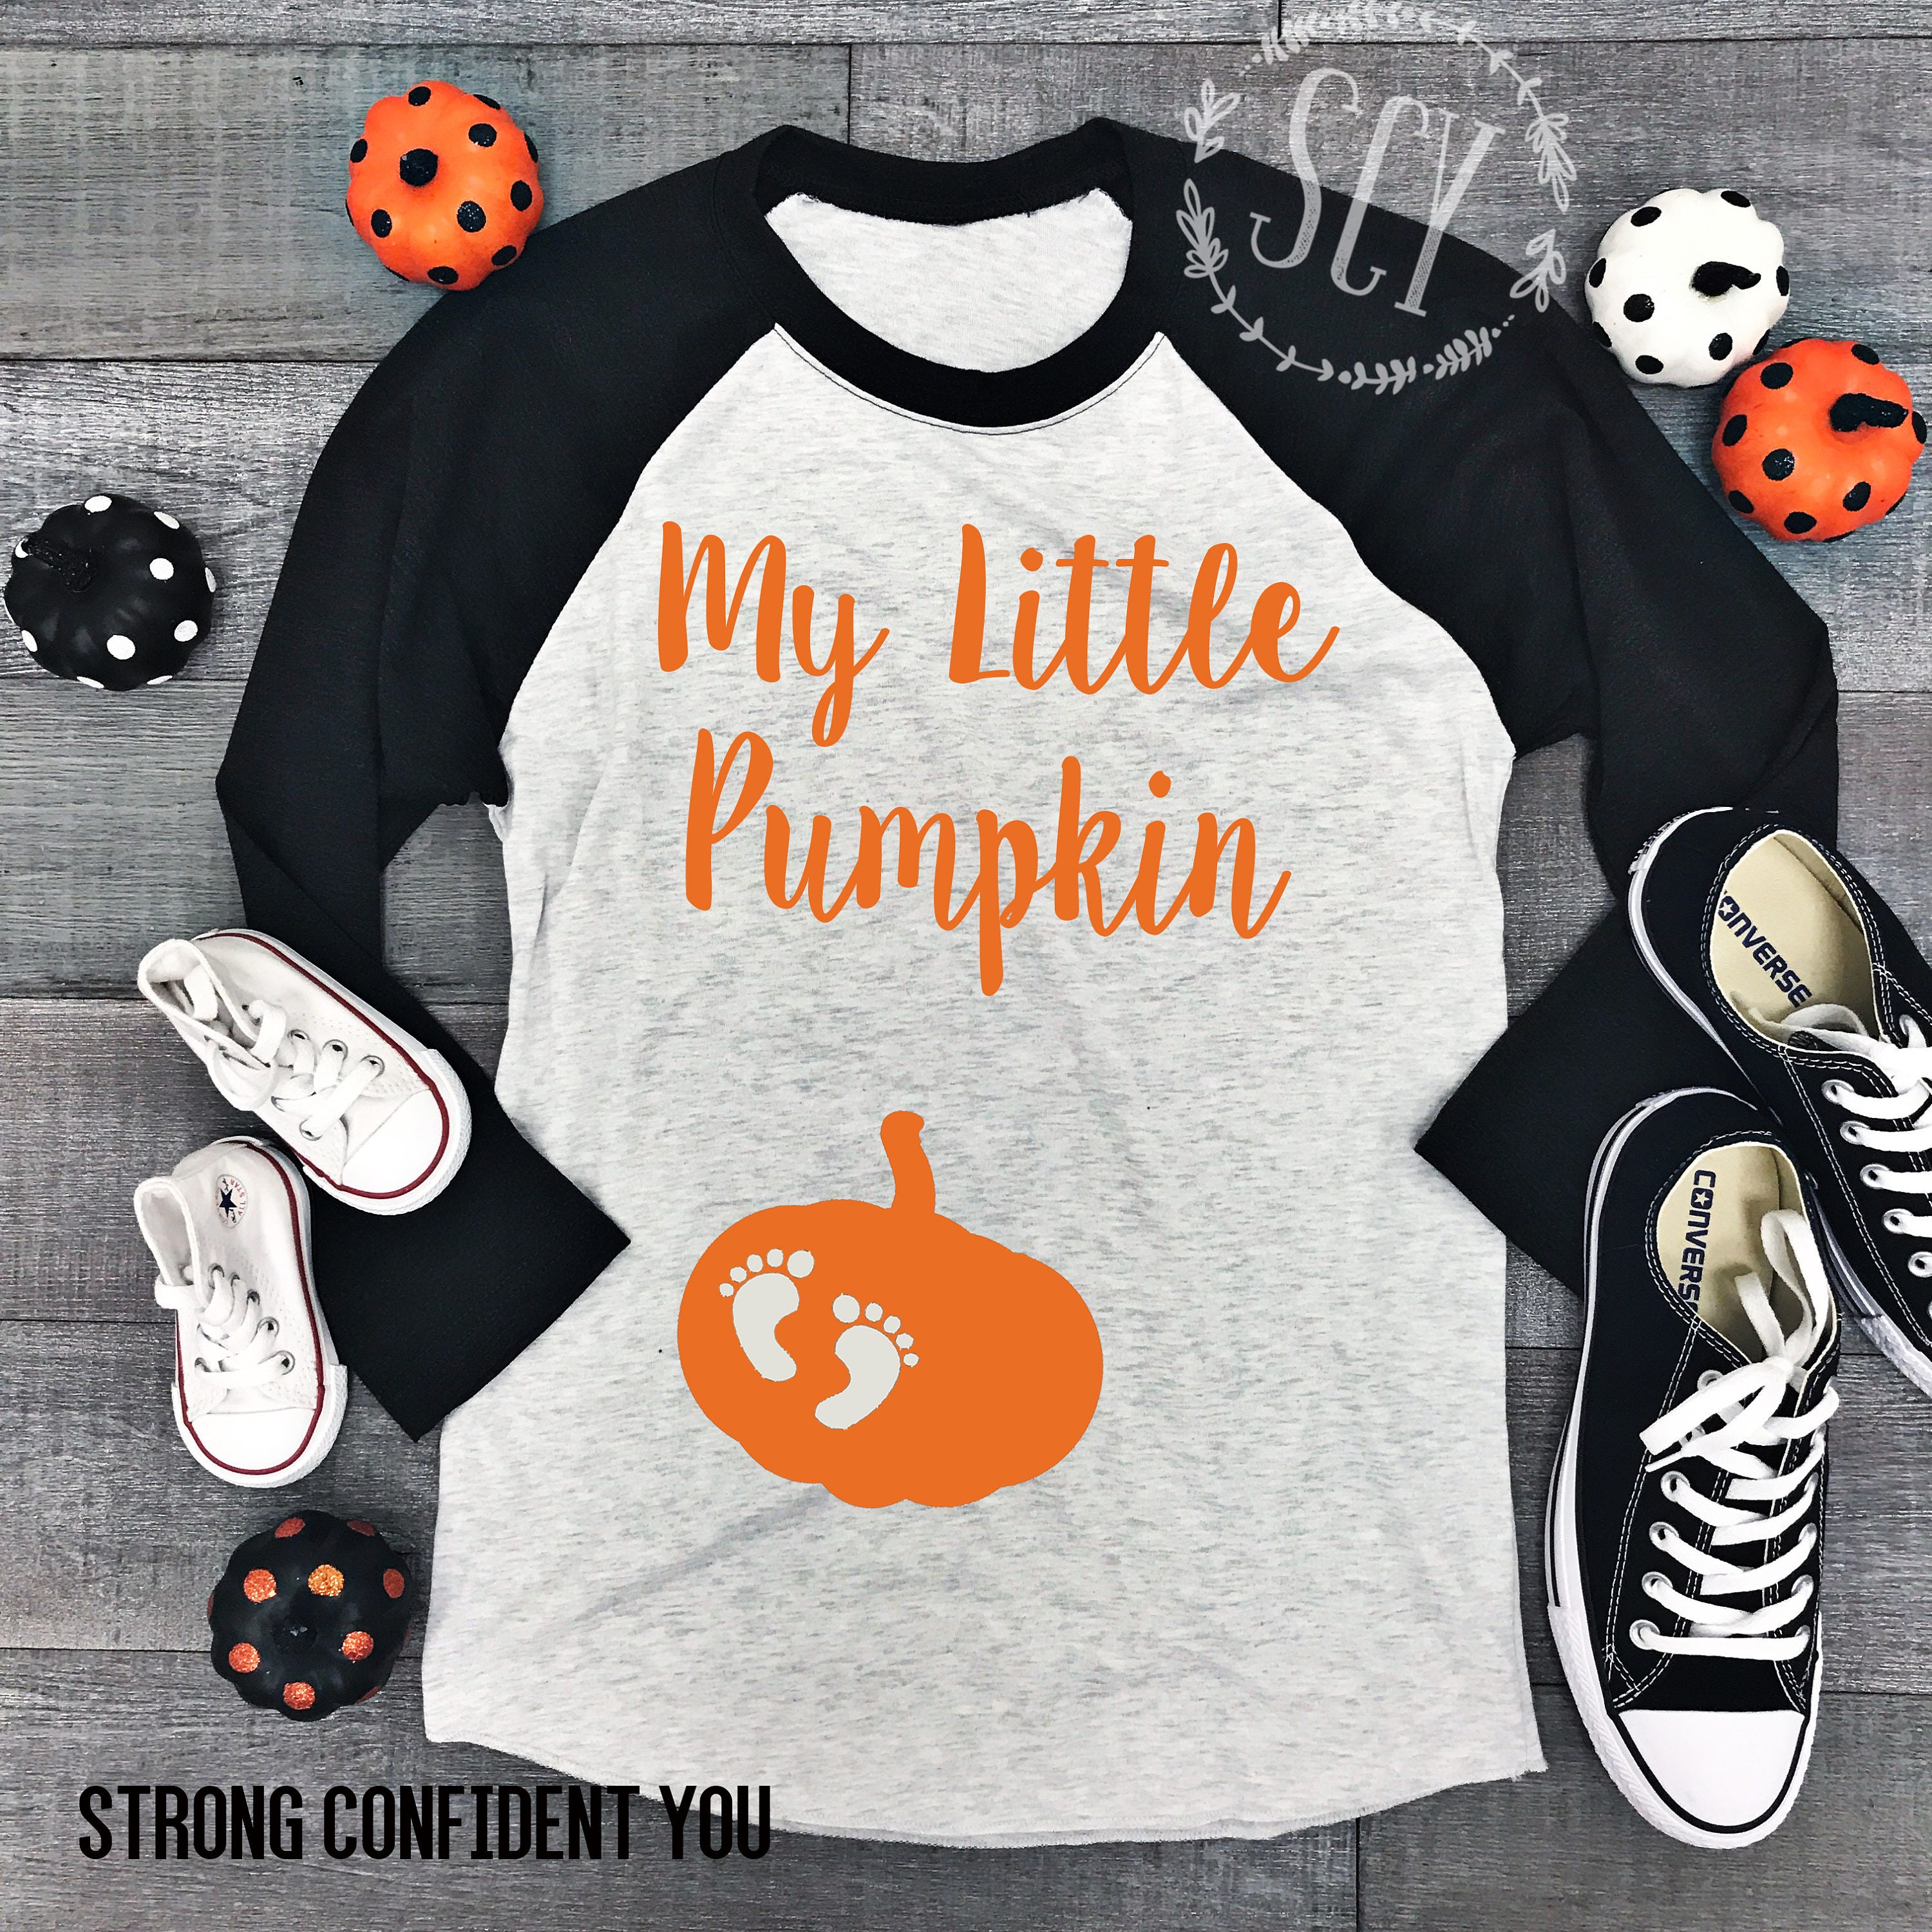 My Little Pumpkin Baseball Style Shirt. XS-3XL. Pregnancy Halloween Shirt. Baby Bump Halloween Shirt. Maternity Halloween Shirt.